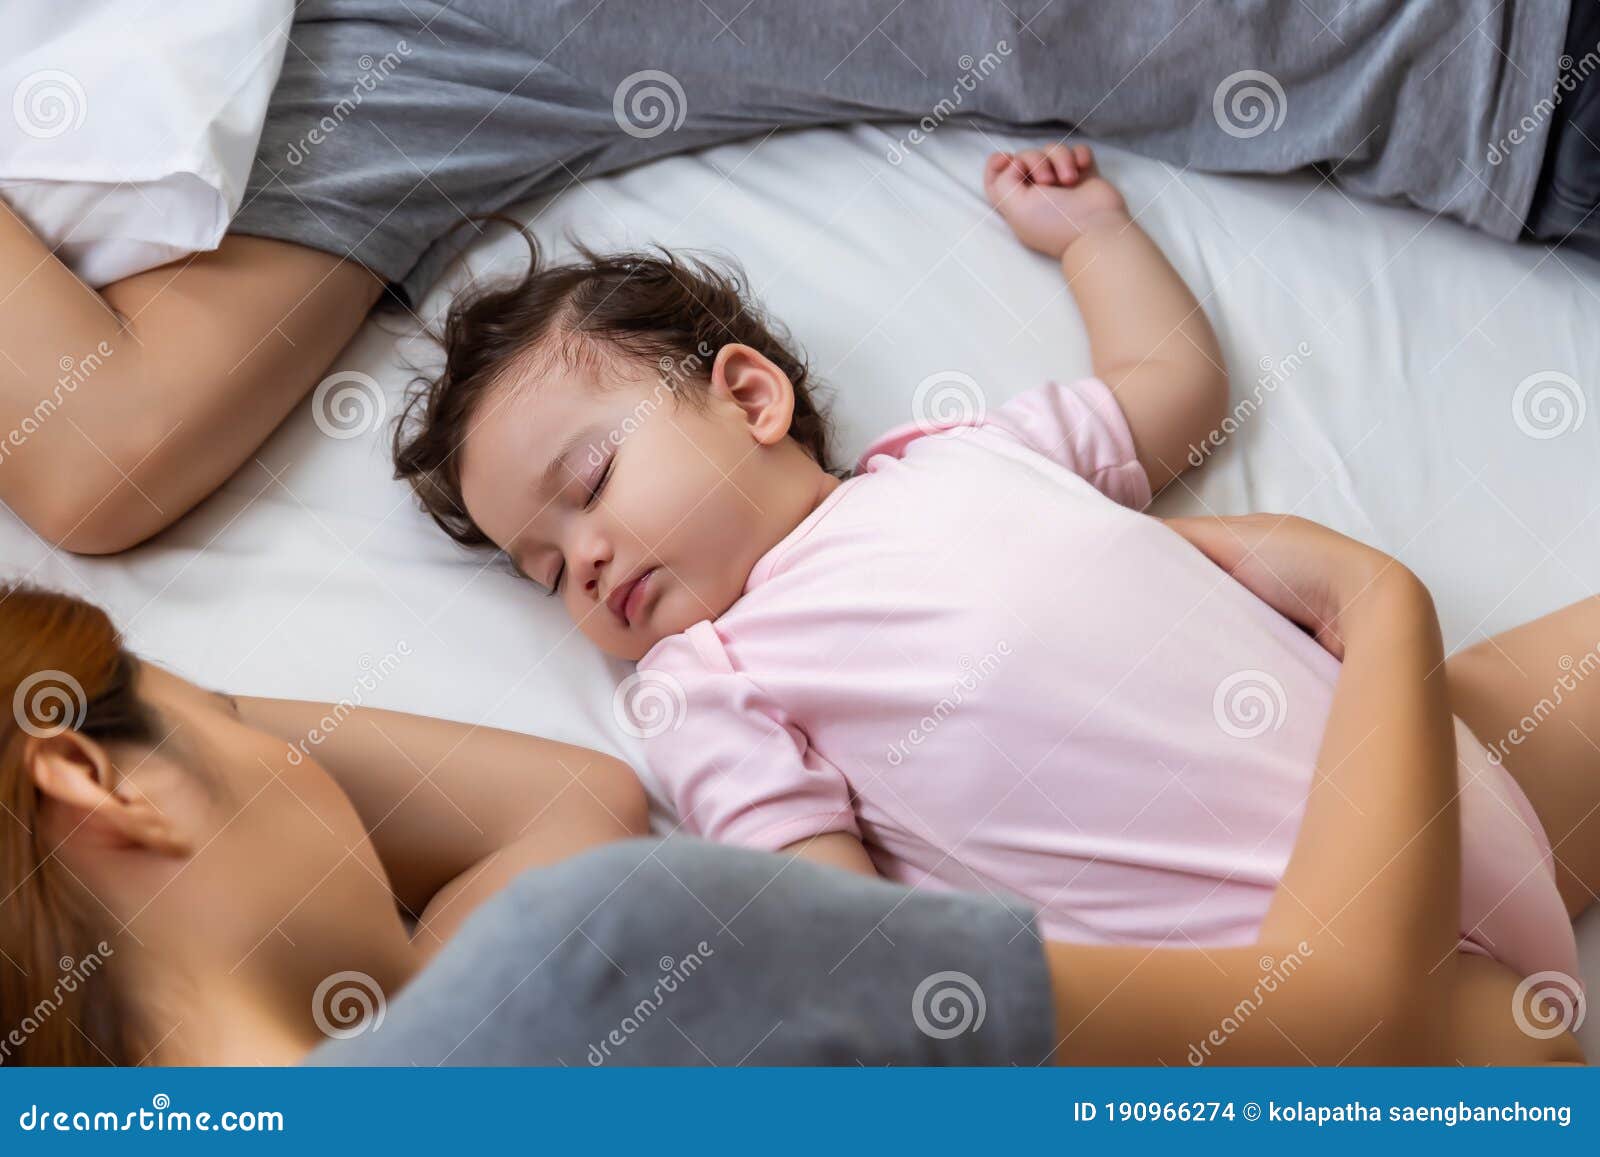 спящая мама азиатка и ее сын фото 94